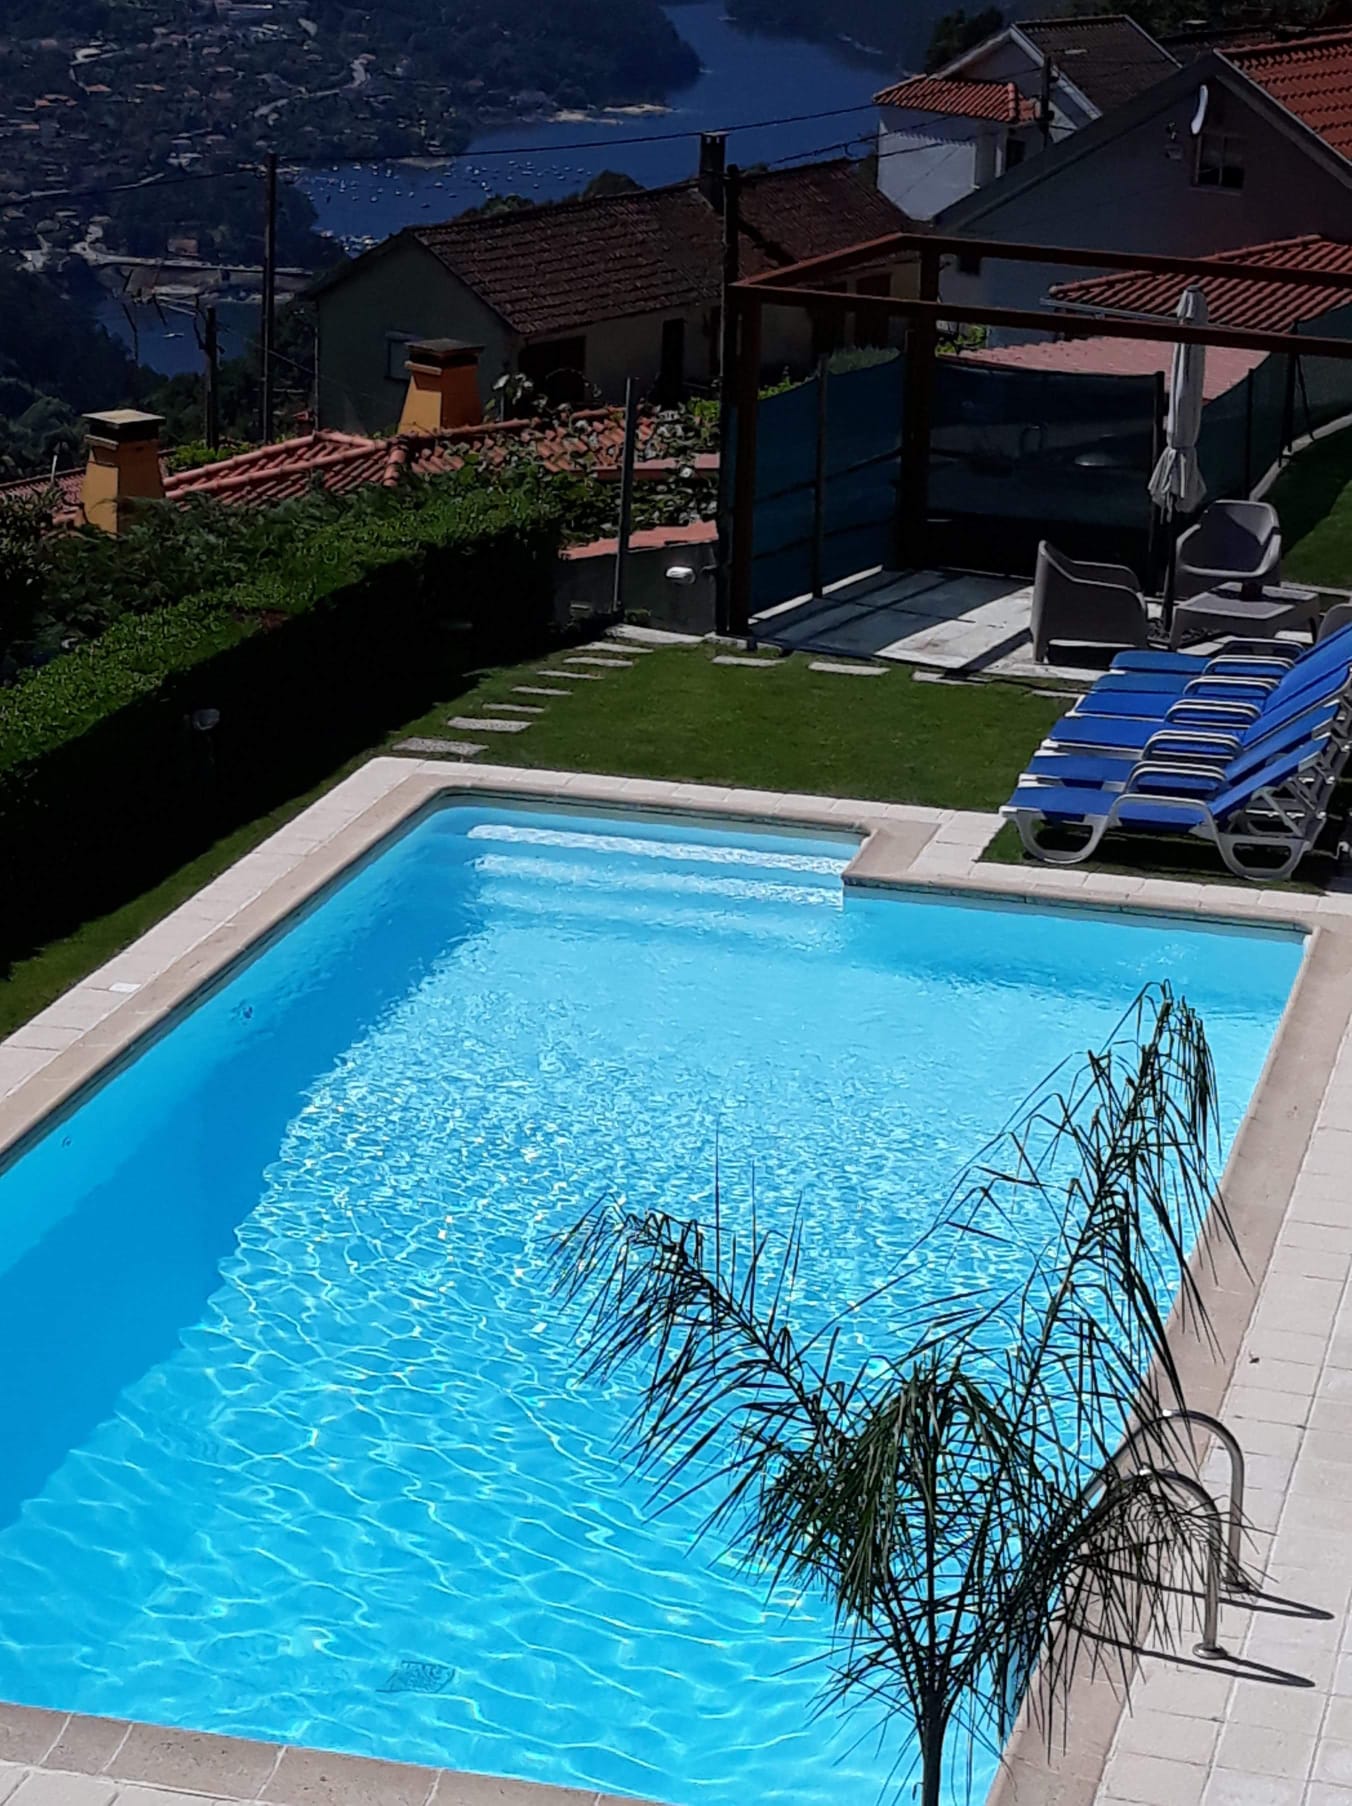 Alojamento Local c/ piscina T2 do Ribeiro